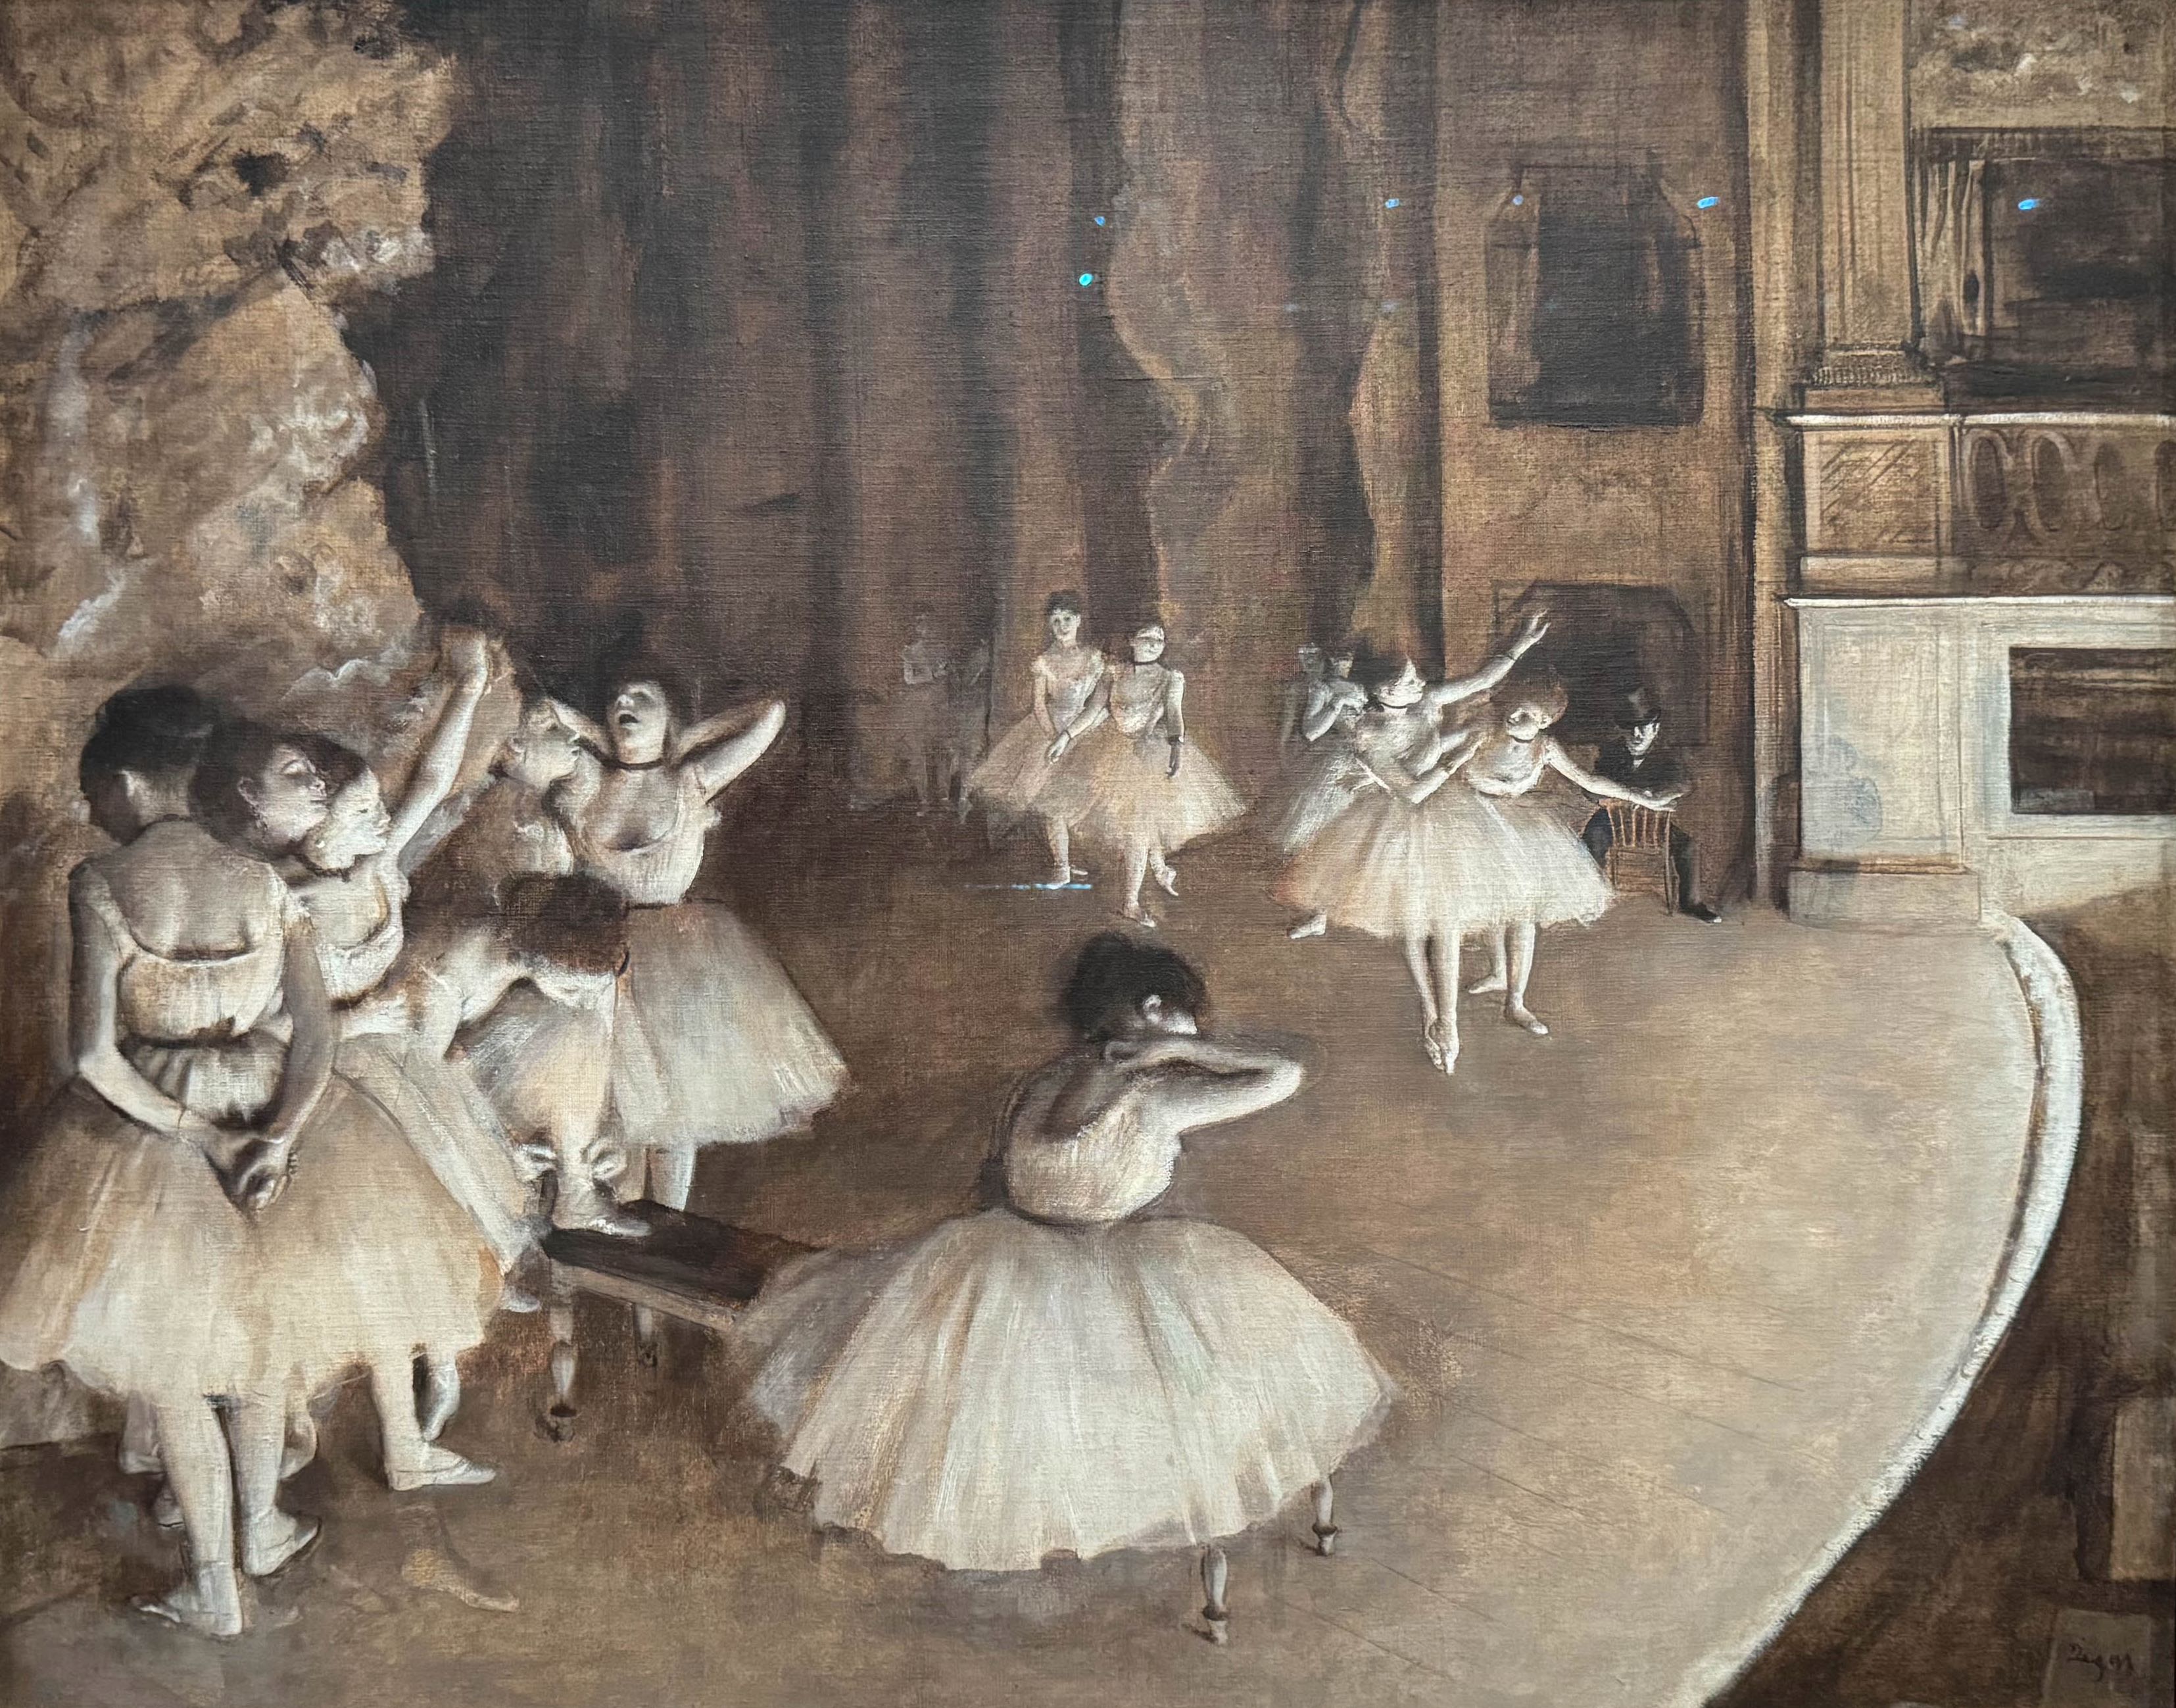 Répétition d’un ballet sur la scène (1874), Edgar Degas, Première exposition impressionniste, n° 60